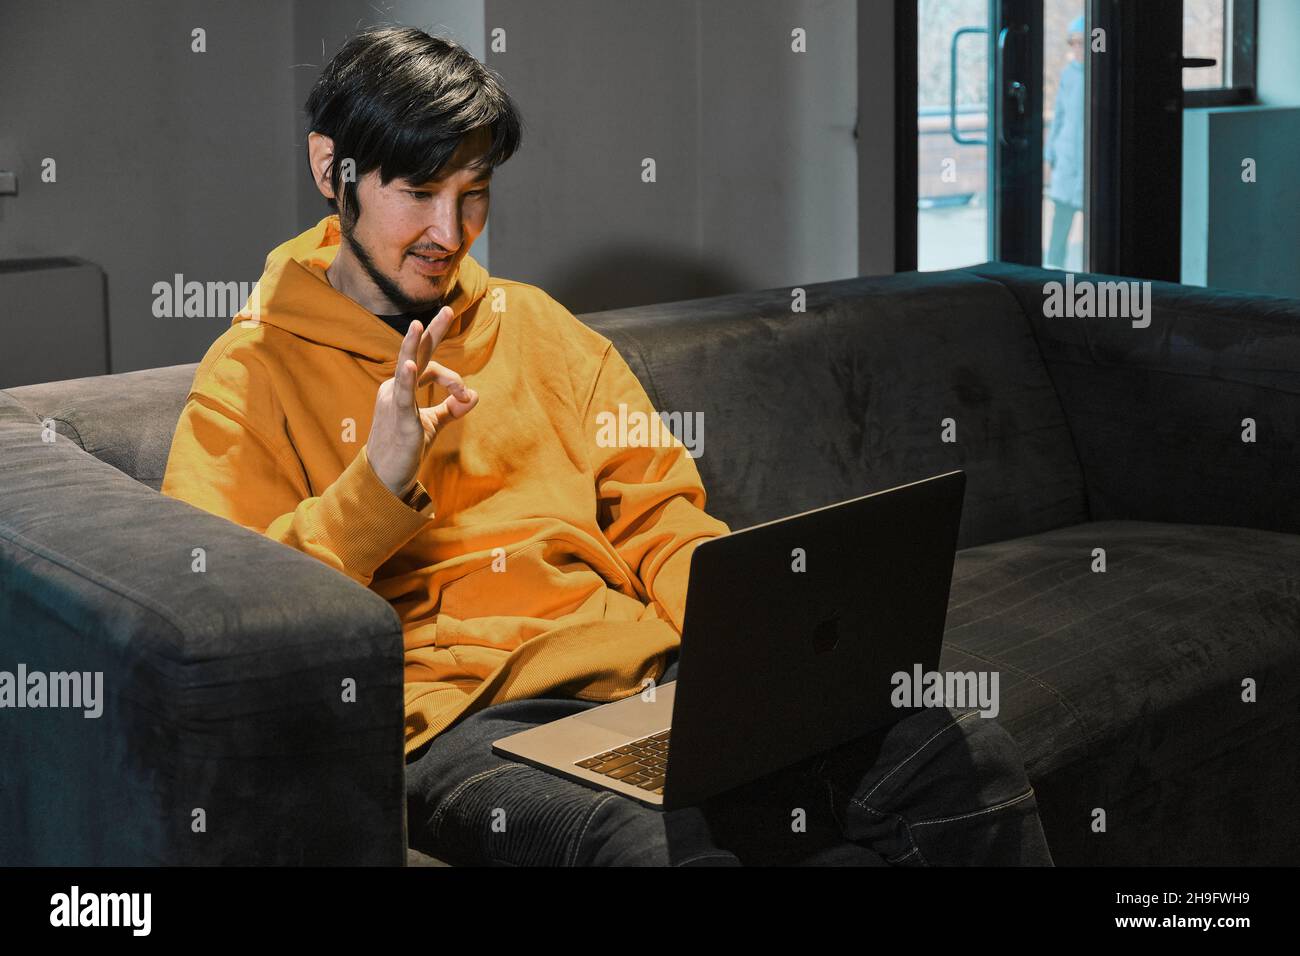 Ein Asiat sitzt in einem kleinen Büro auf dem Sofa und kommuniziert über einen Laptop über eine Videoverbindung. Das Konzept von Kleinunternehmen und Online-Kommunikation. Stockfoto